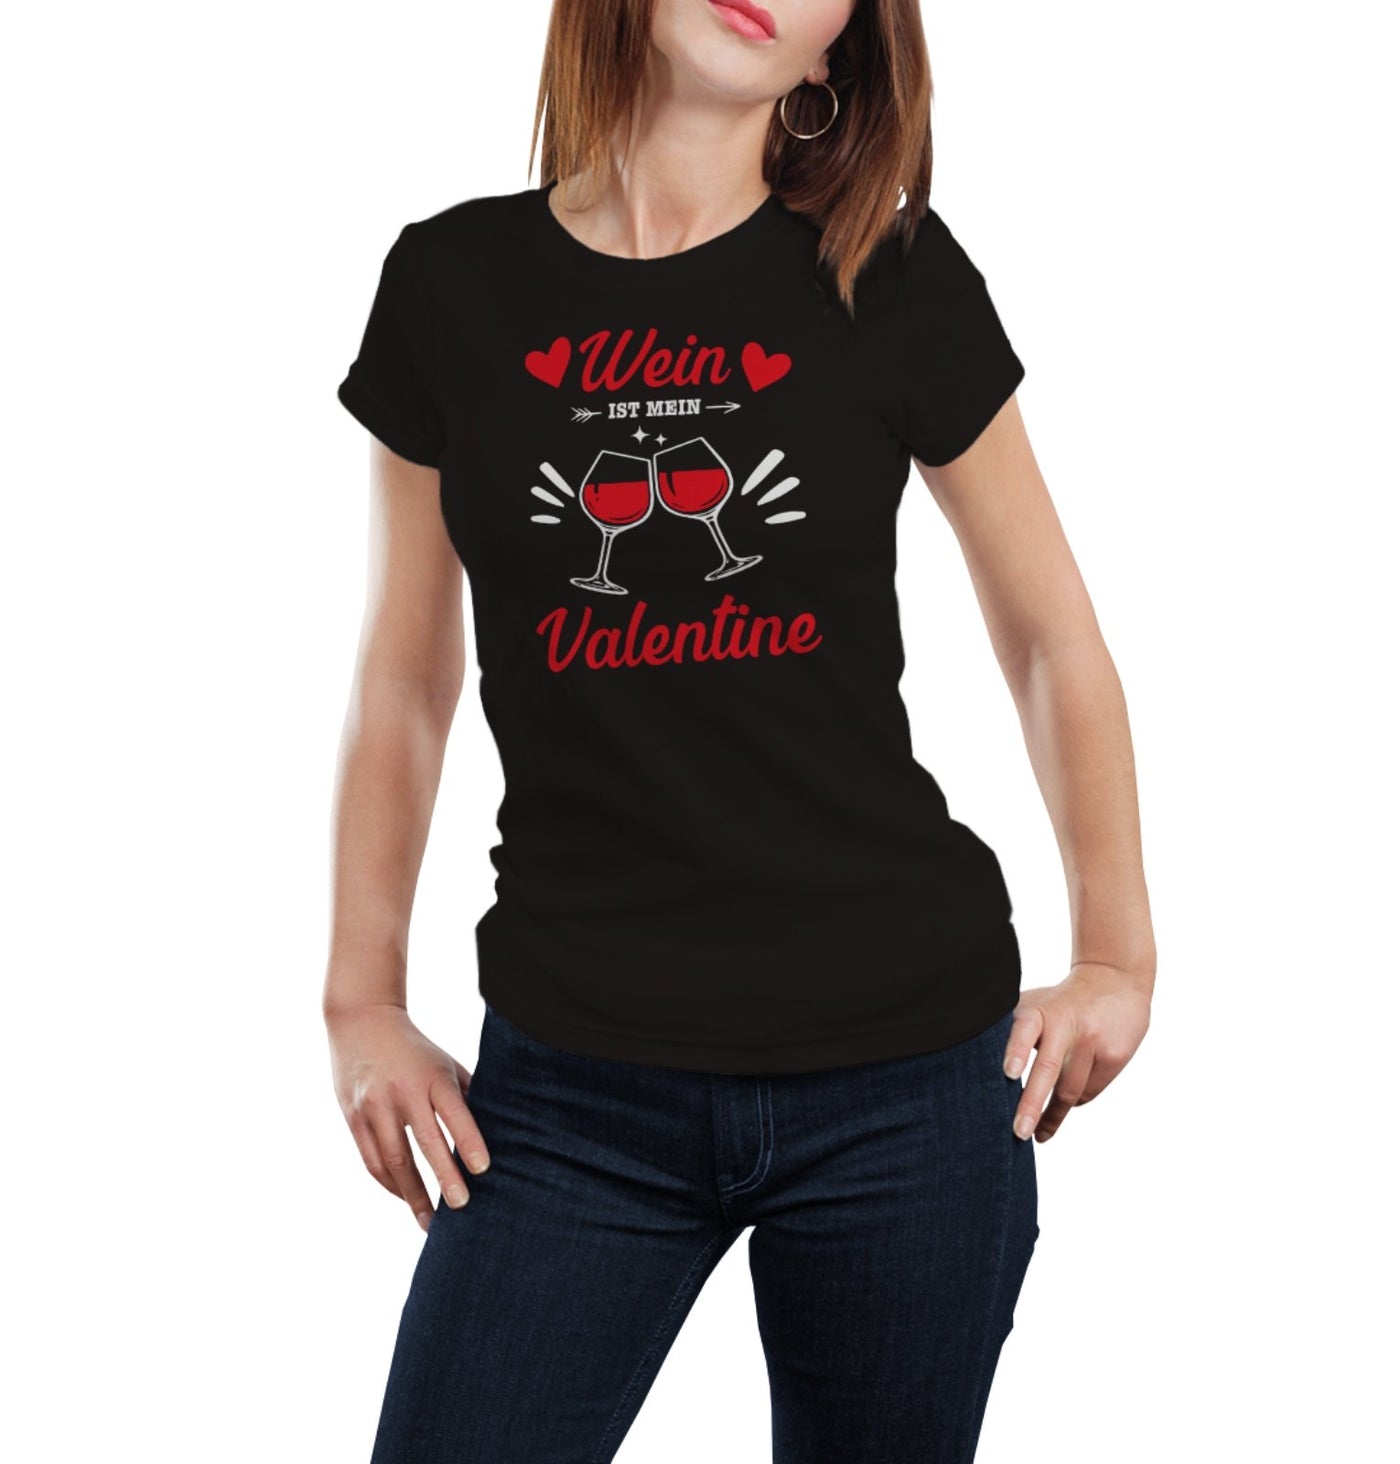 Bild: T-Shirt - Wein ist mein Valentine Geschenkidee